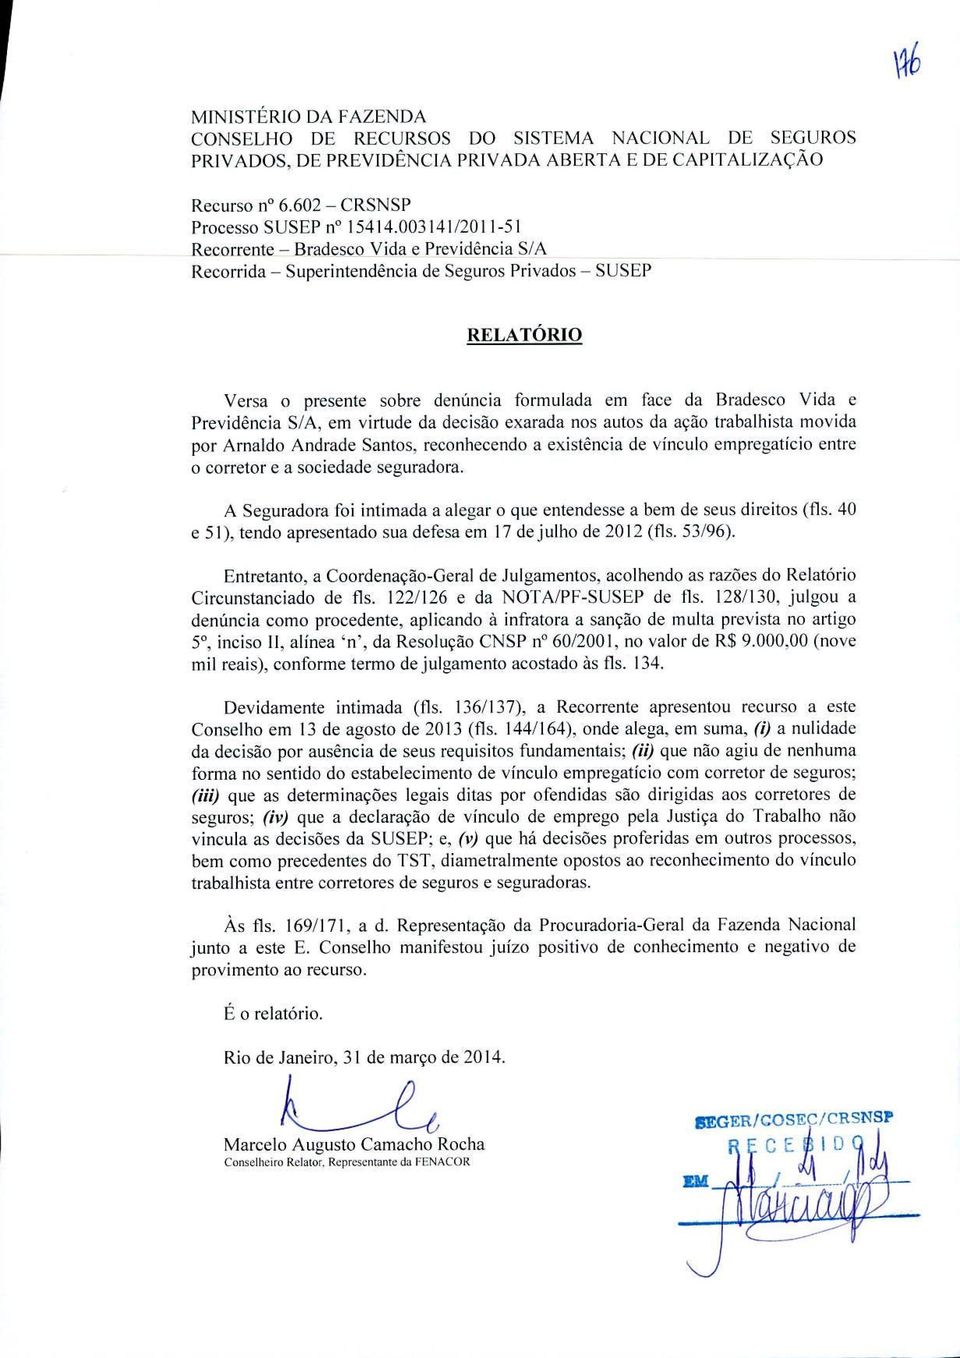 Previdência S/A, em virtude da decisão exarada nos autos da ação trabalhista movida por Arnaldo Andrade Santos.